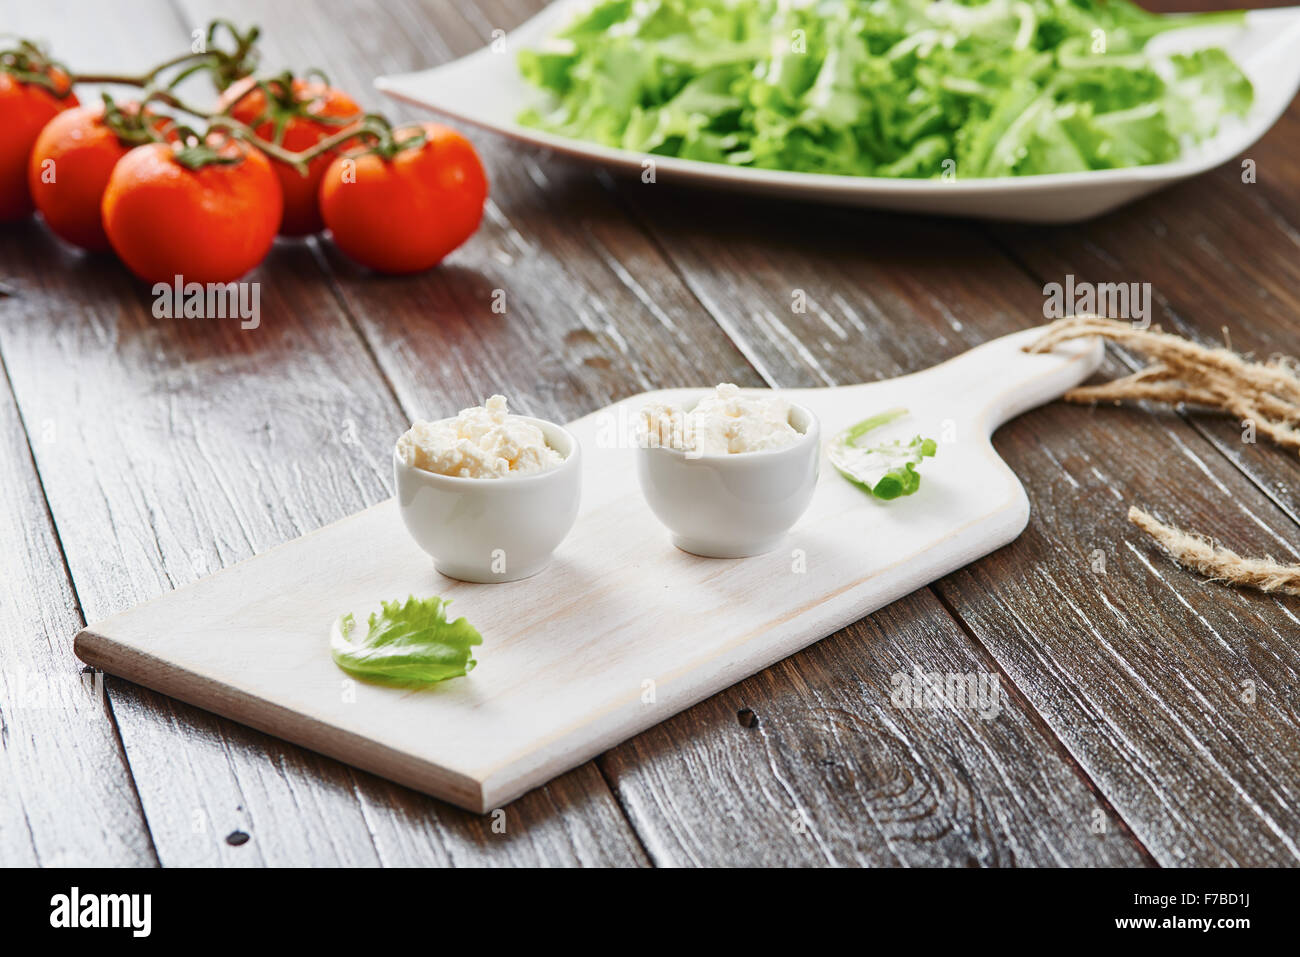 Le fromage cottage dans deux bols sur la table en bois blanc, tomates et salade Banque D'Images